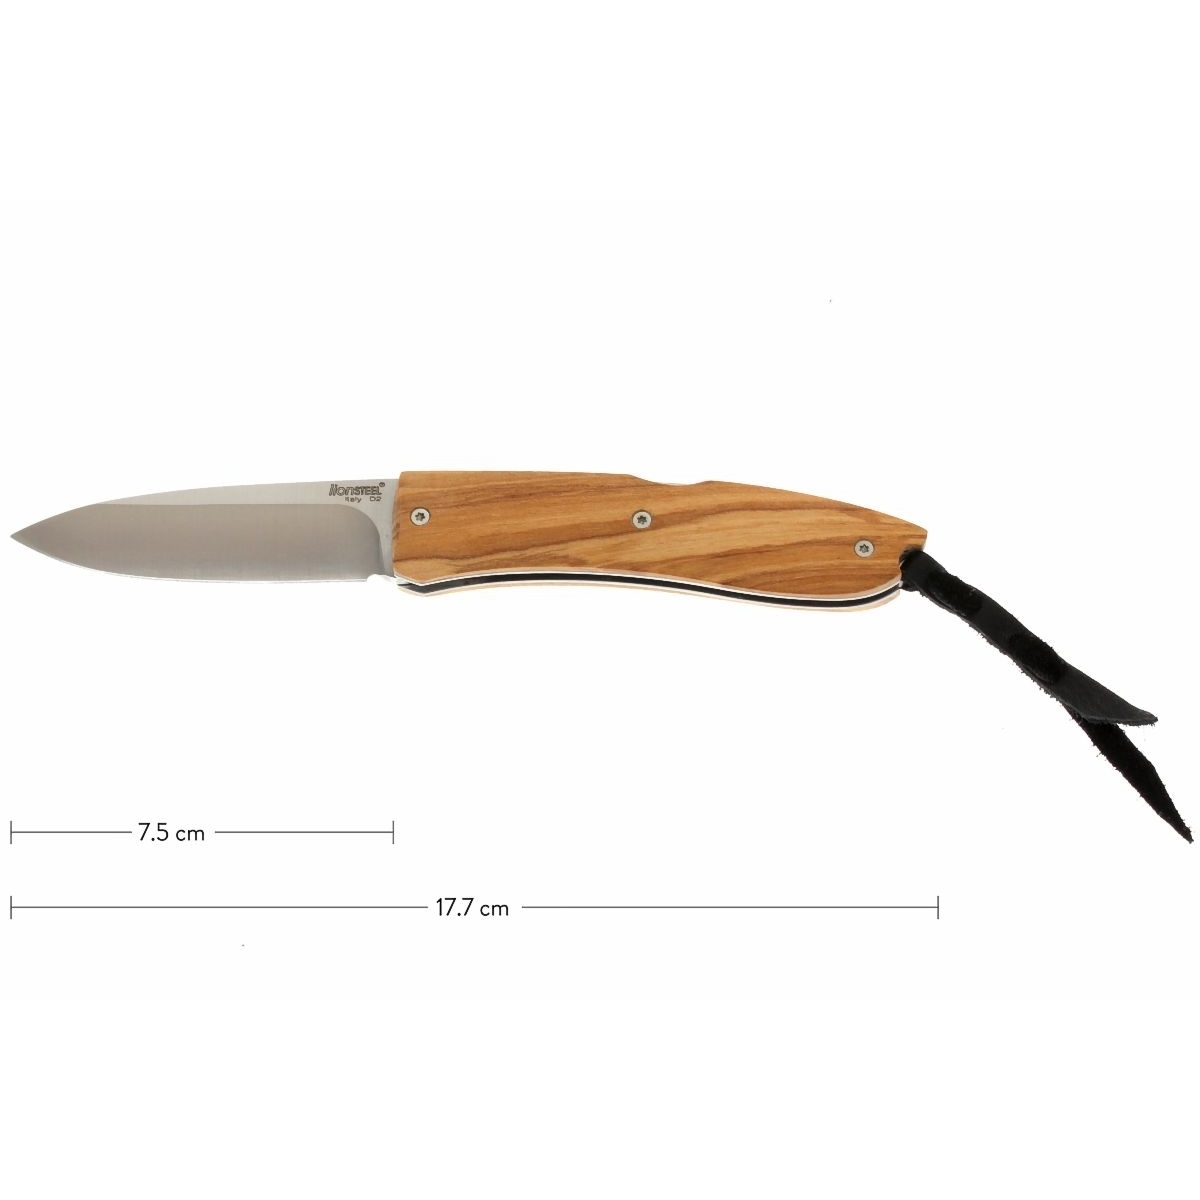 Складной нож LionSteel Opera, сталь D2, рукоять оливковое дерево - фото 2